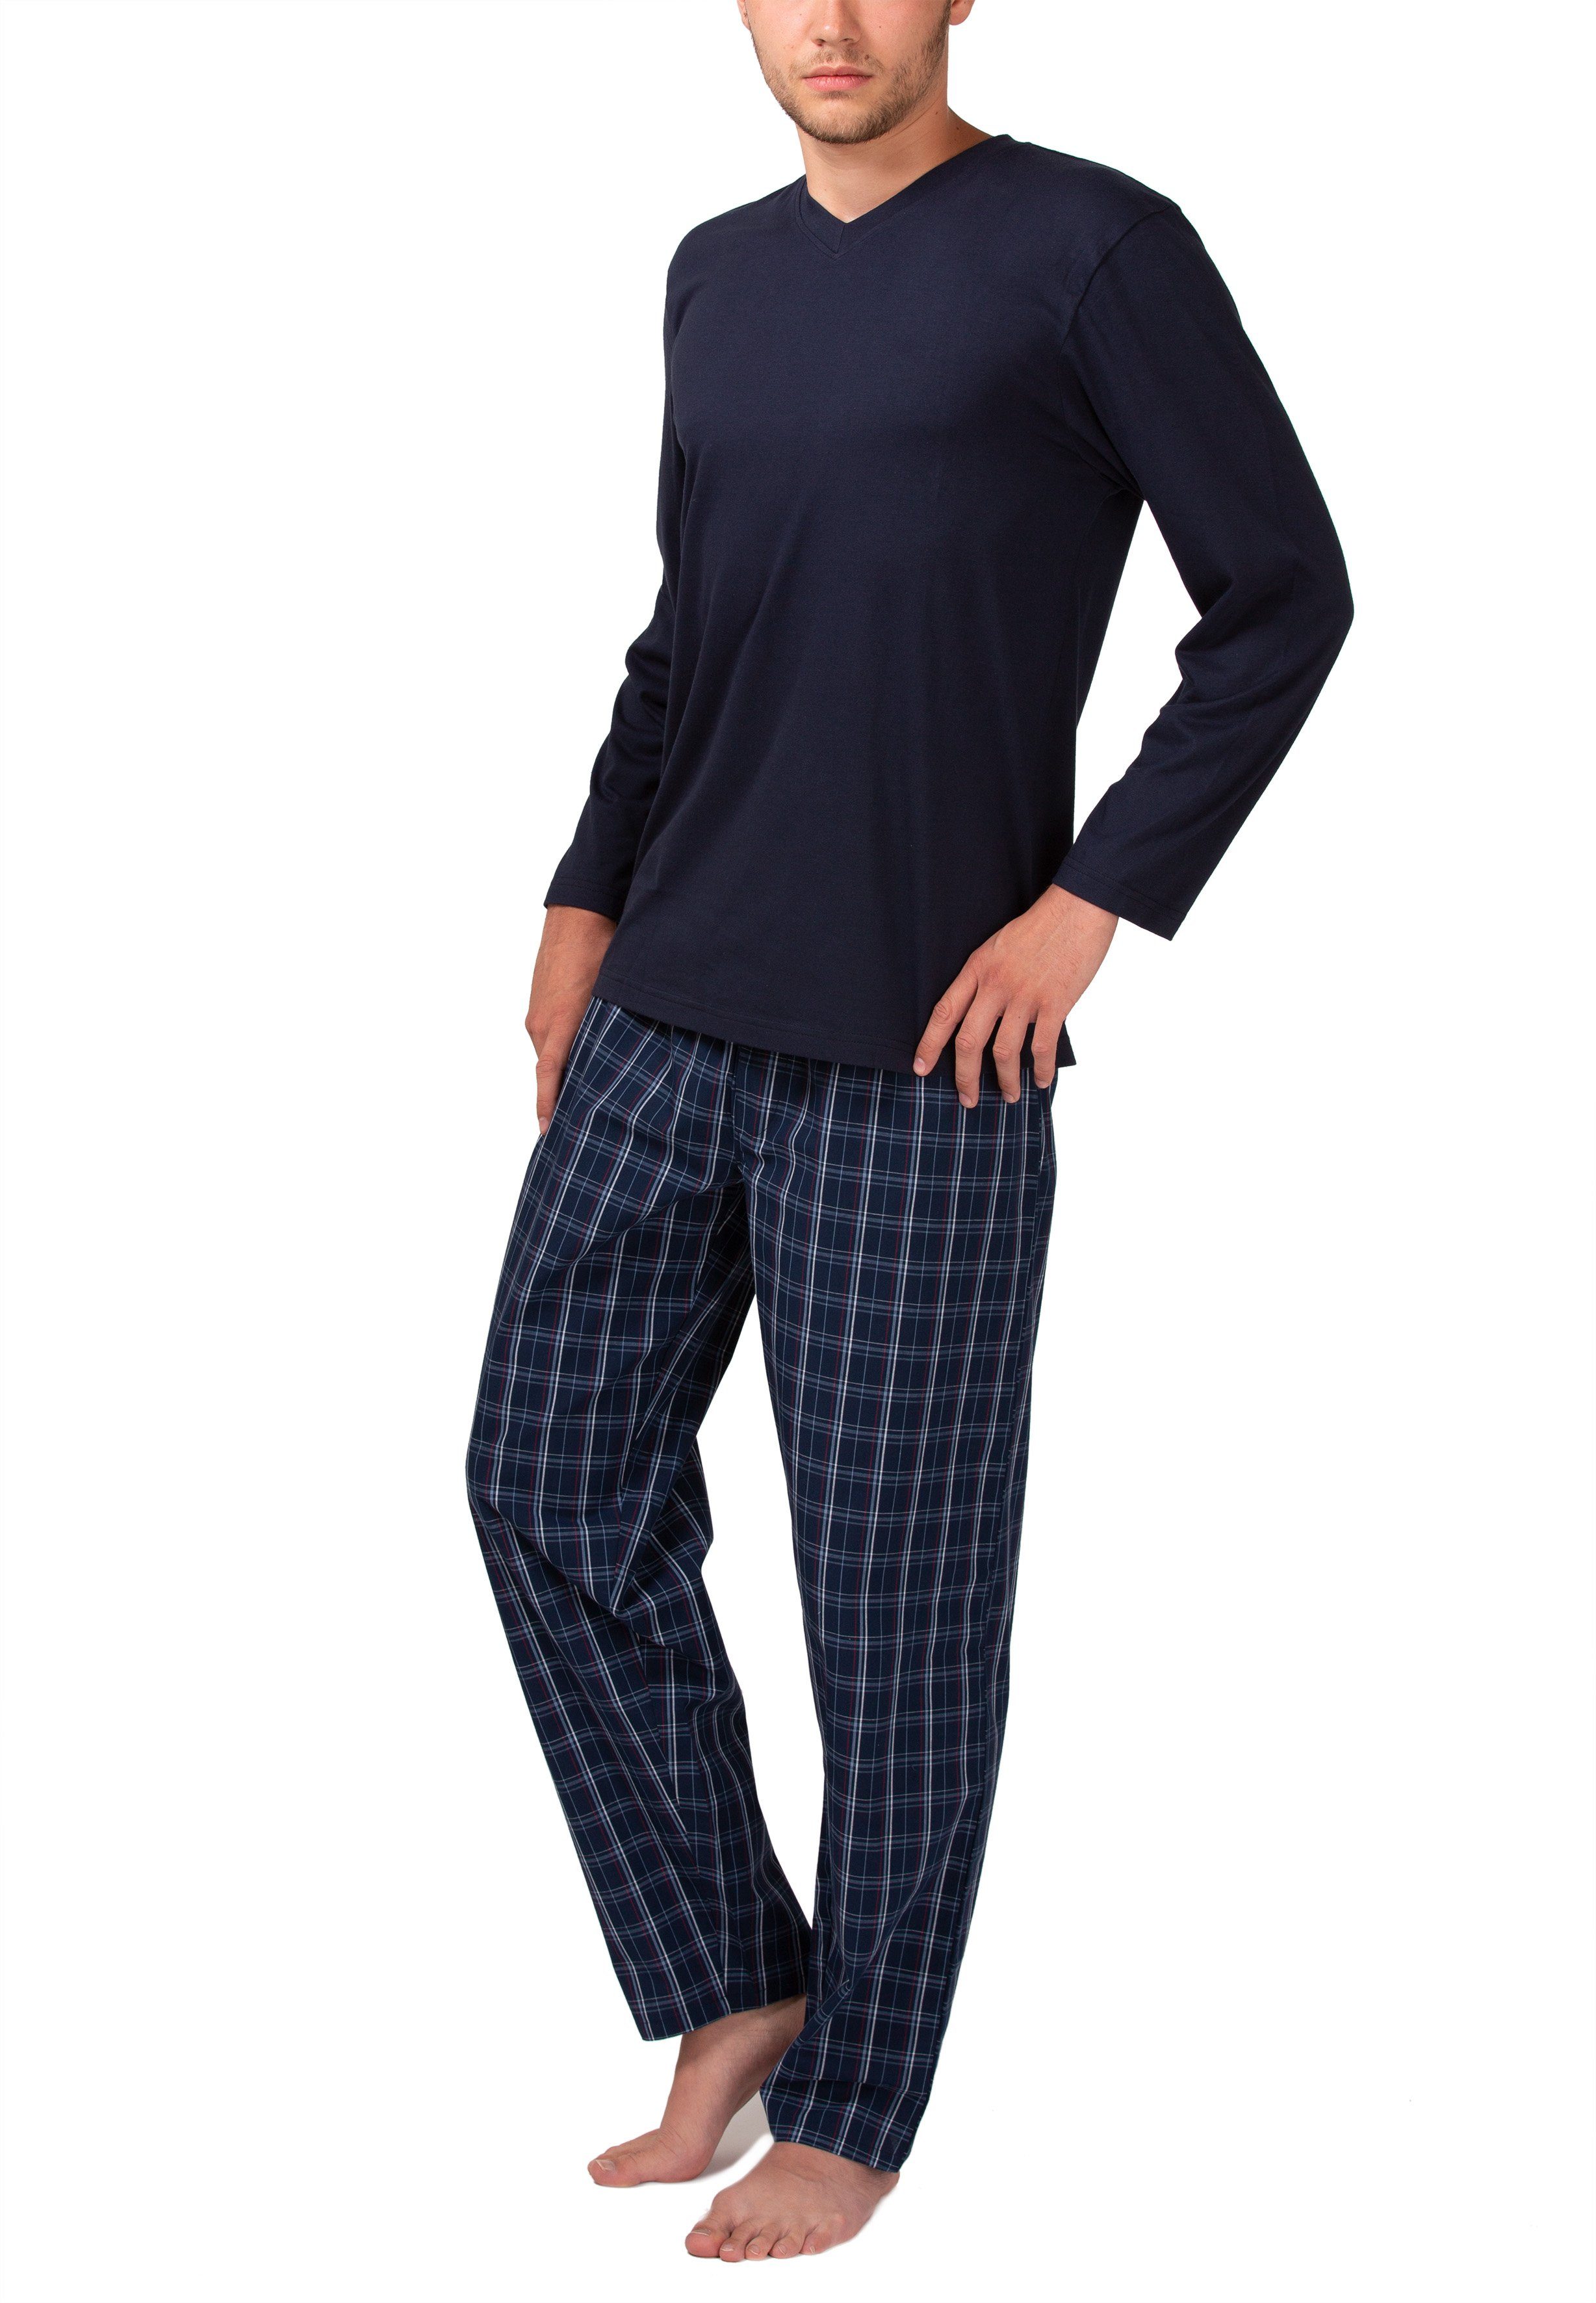 Moonline Pyjama Herren Schlafanzug mit Webhose aus 100% Baumwolle navy